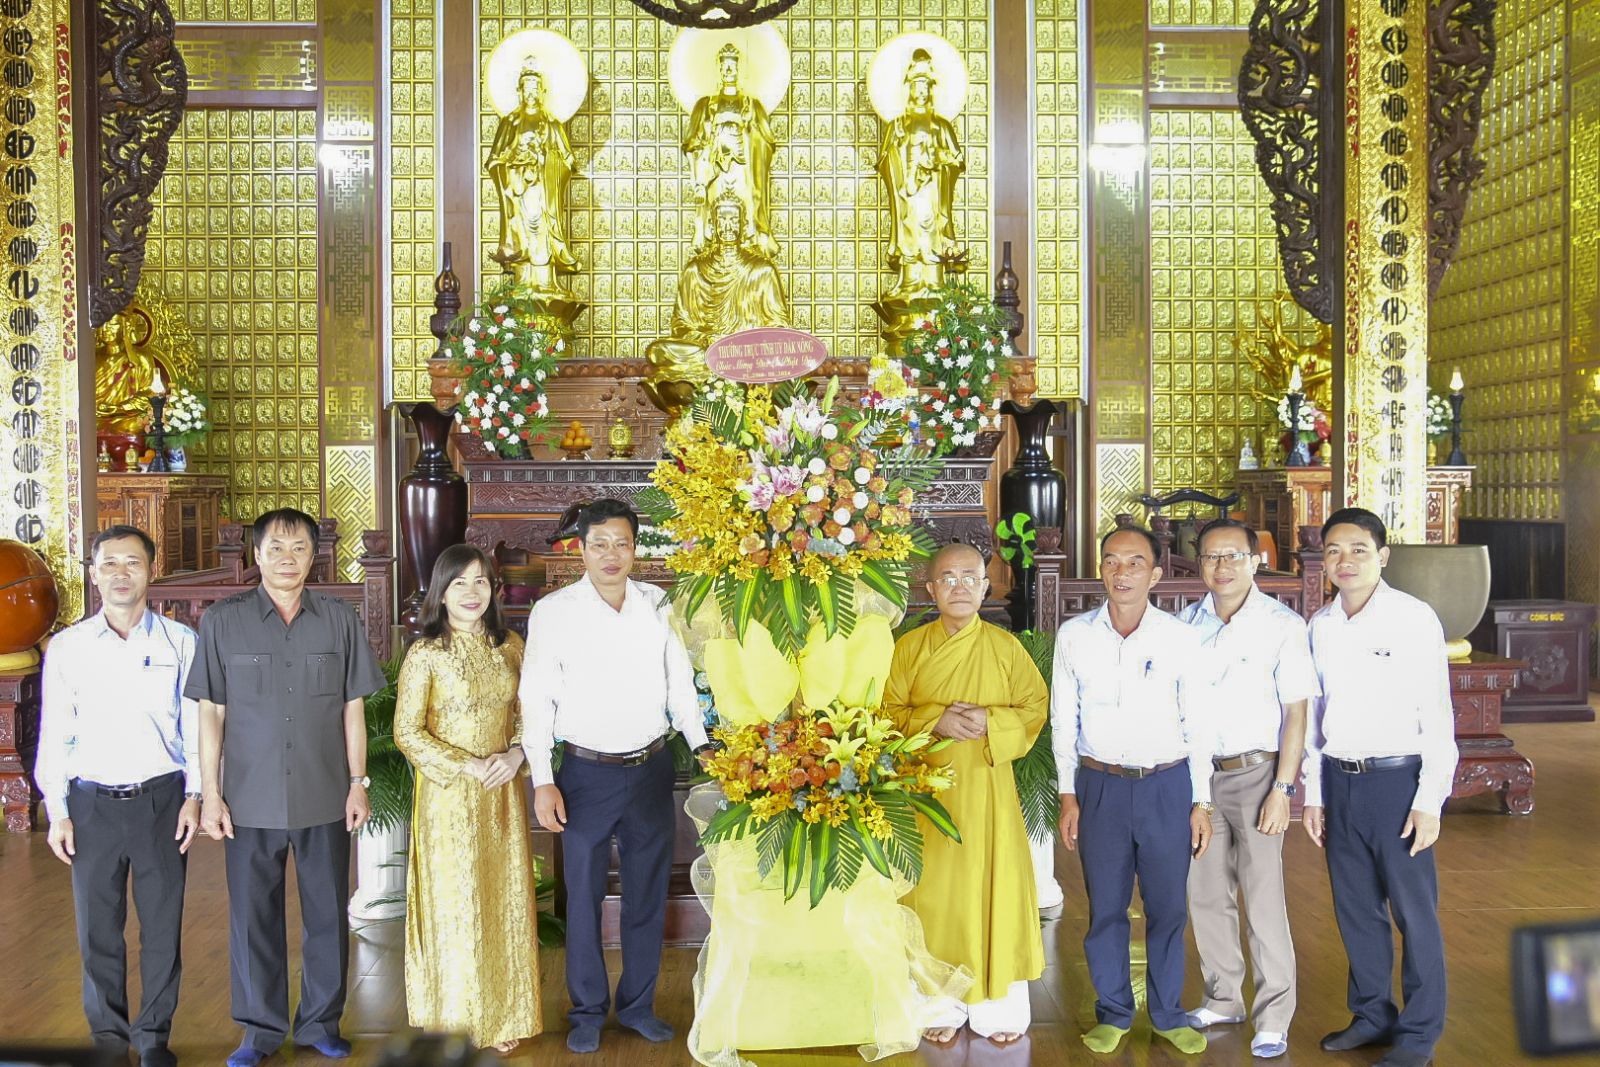 Phái đoàn Thường trực Tỉnh ủy Đắk Nông chúc mừng Đại lễ Phật đản PL. 2568 tại chùa Pháp Hoa